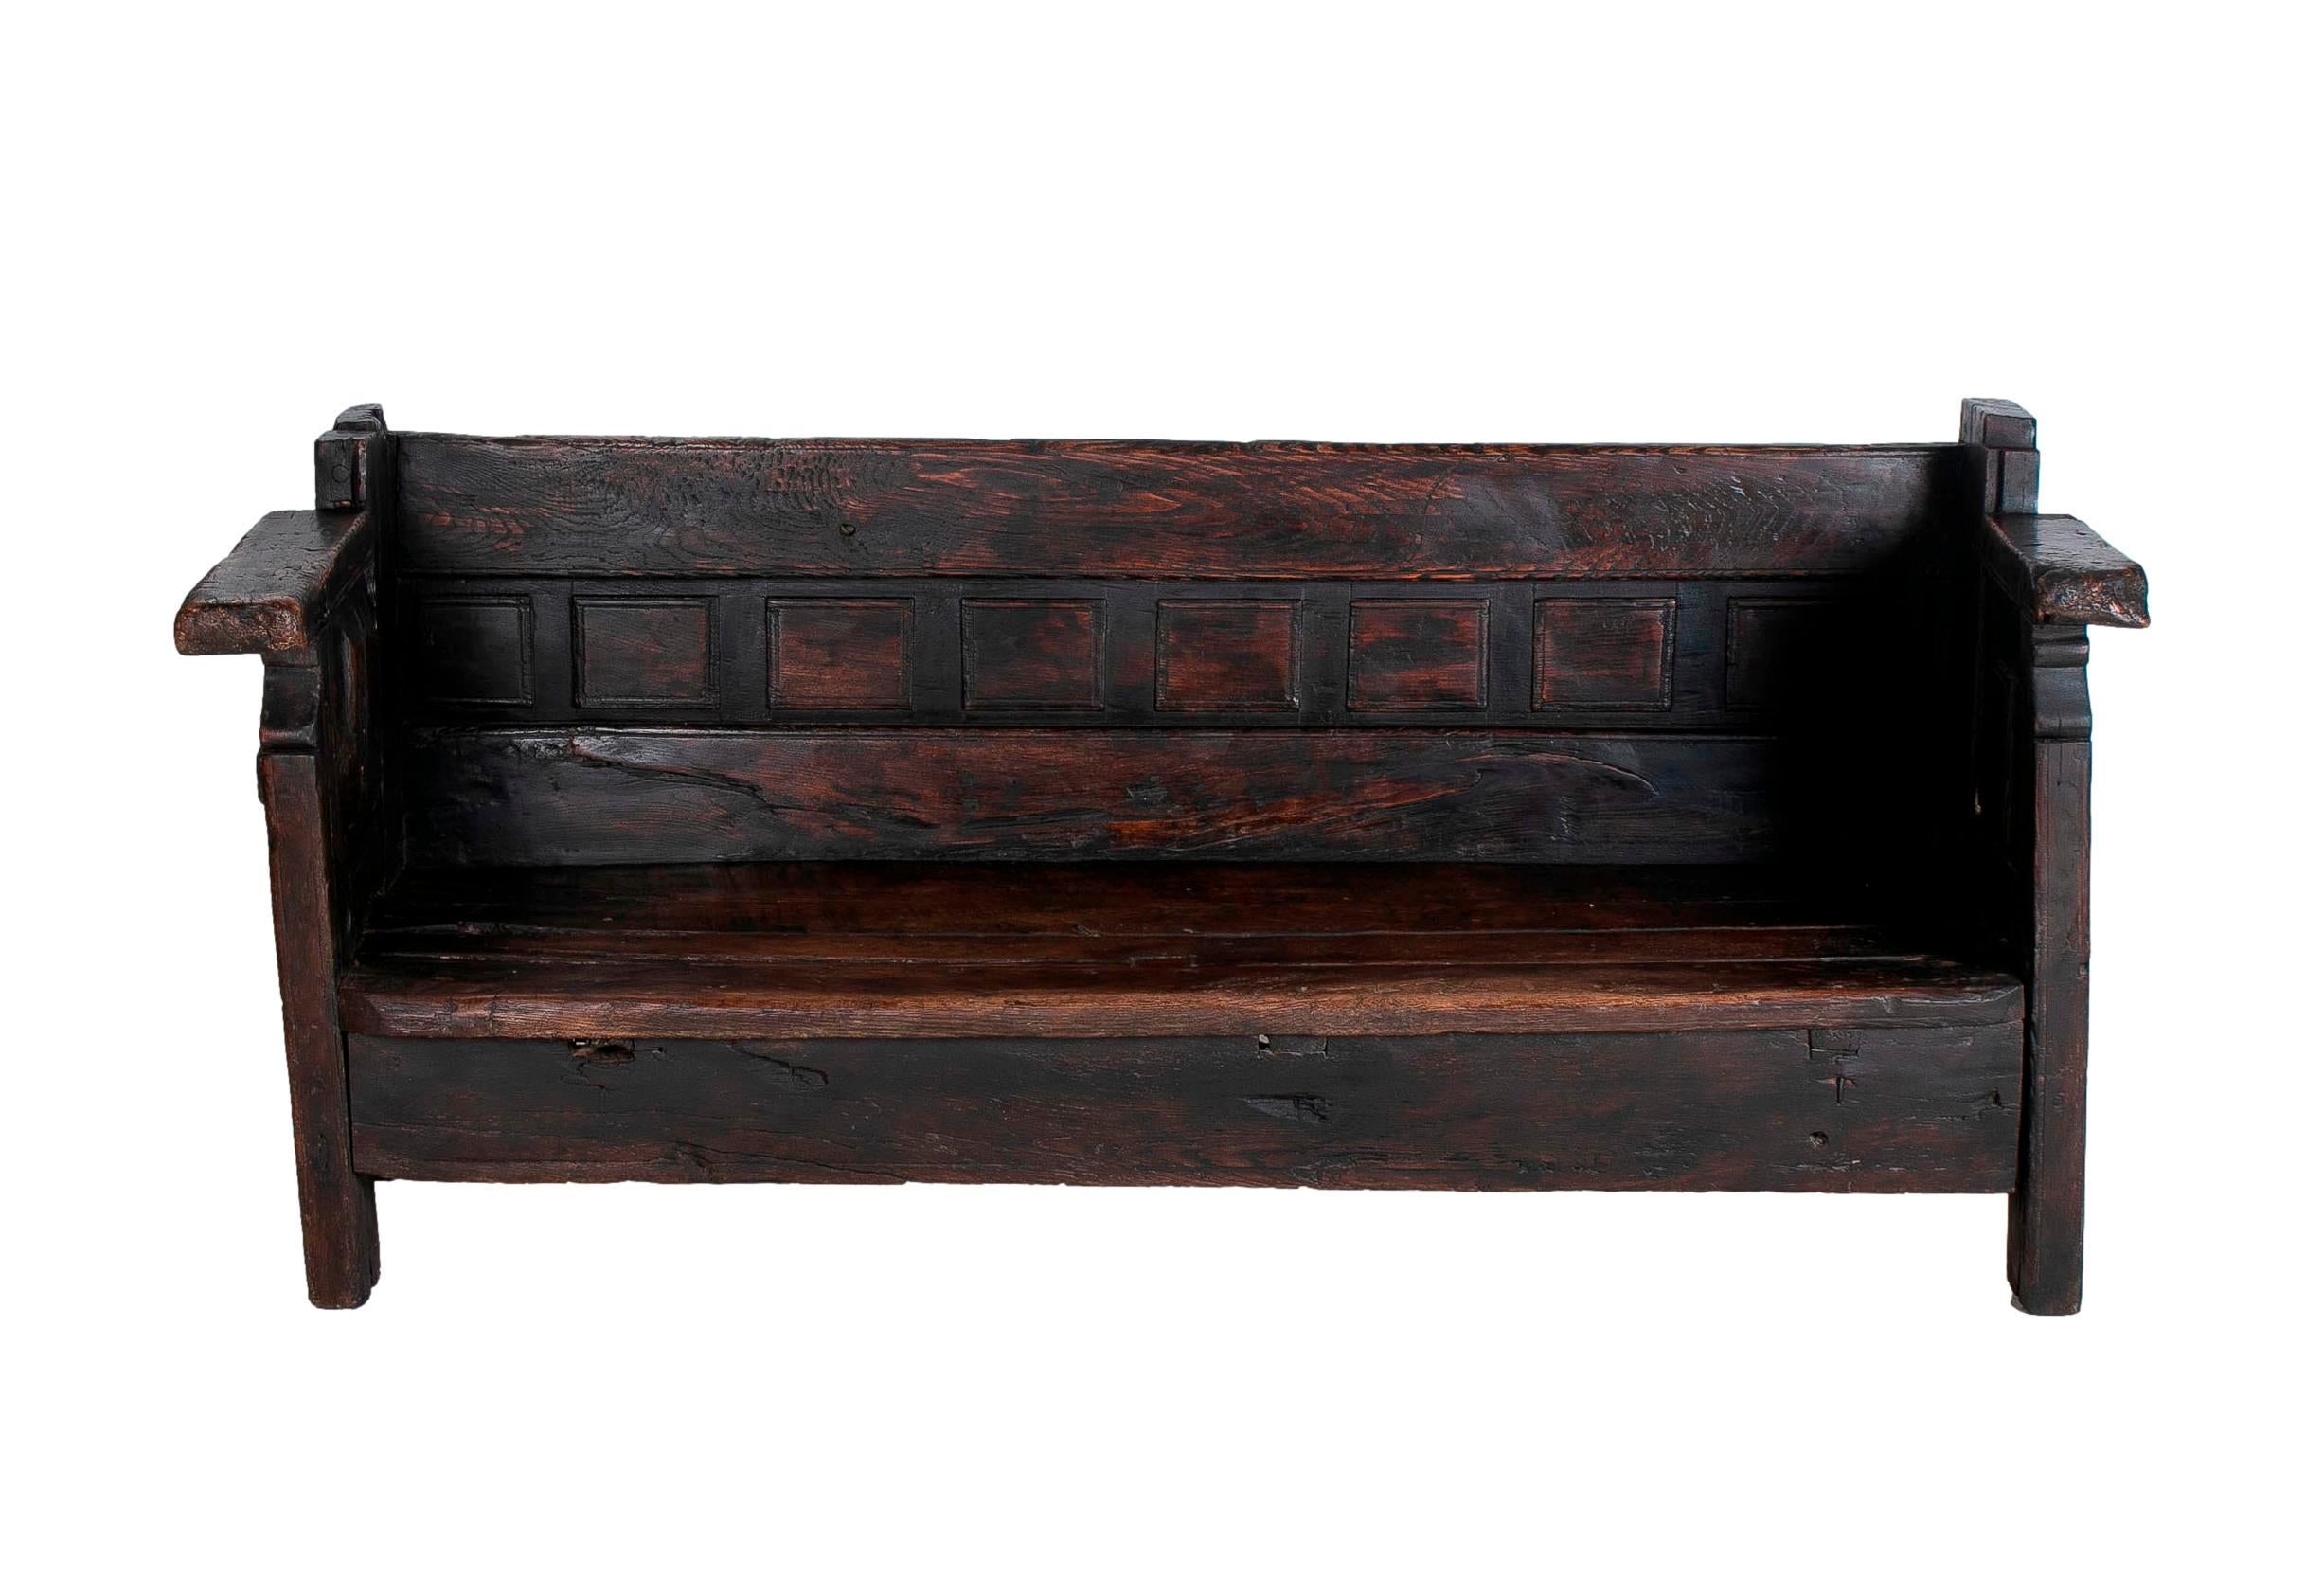 19th century Spanish handmade wooden bench.